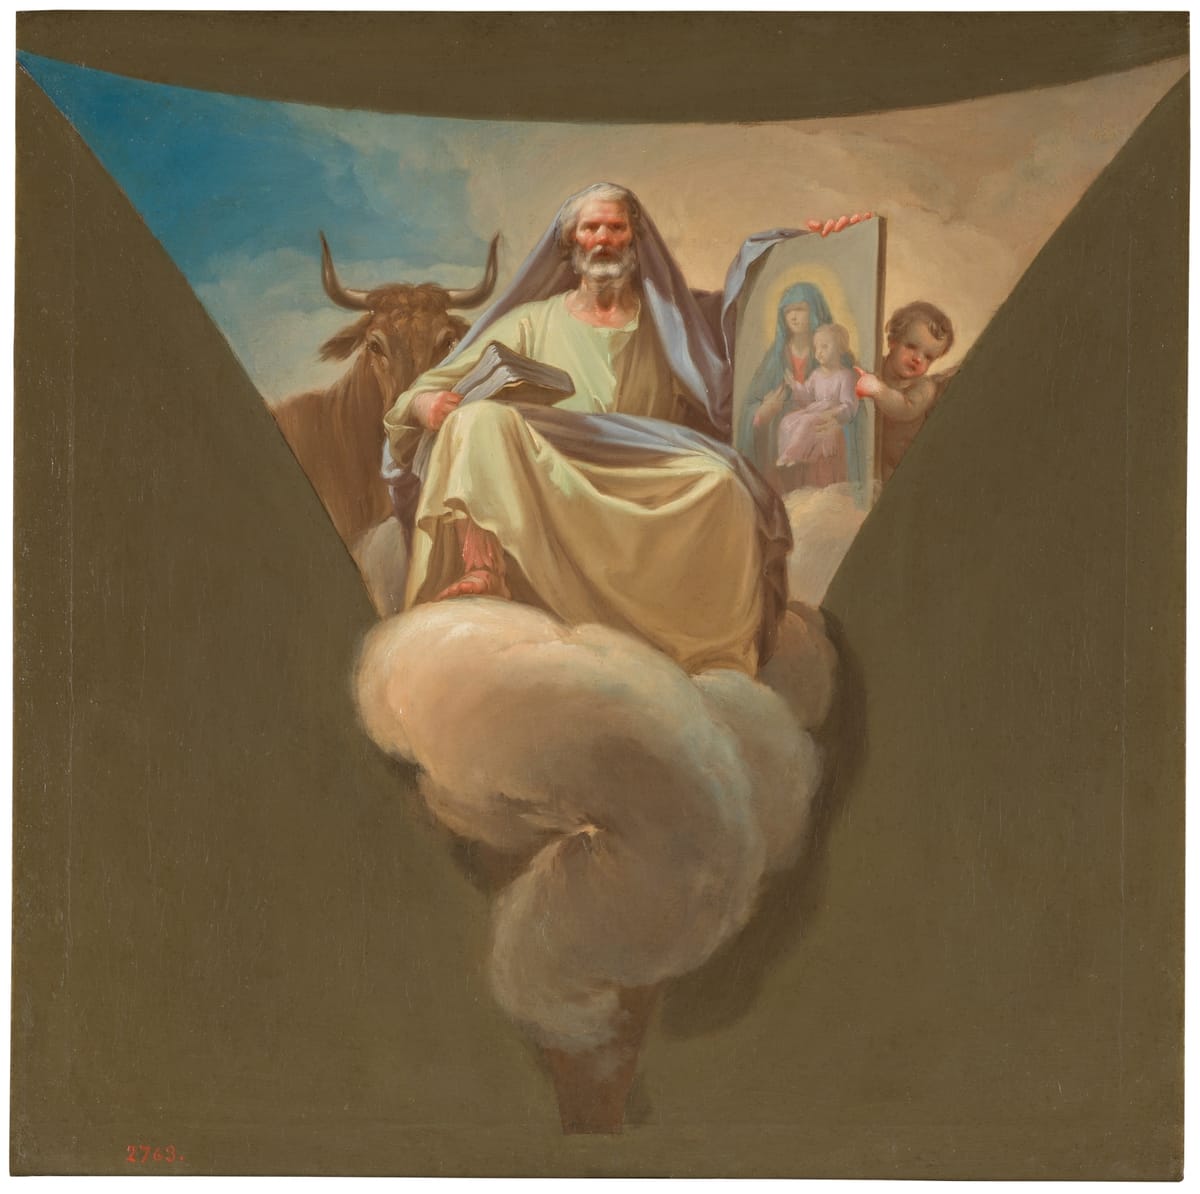 Saint Luke (1771) by Bayeu, Francisco - Public Domain Catholic Painting